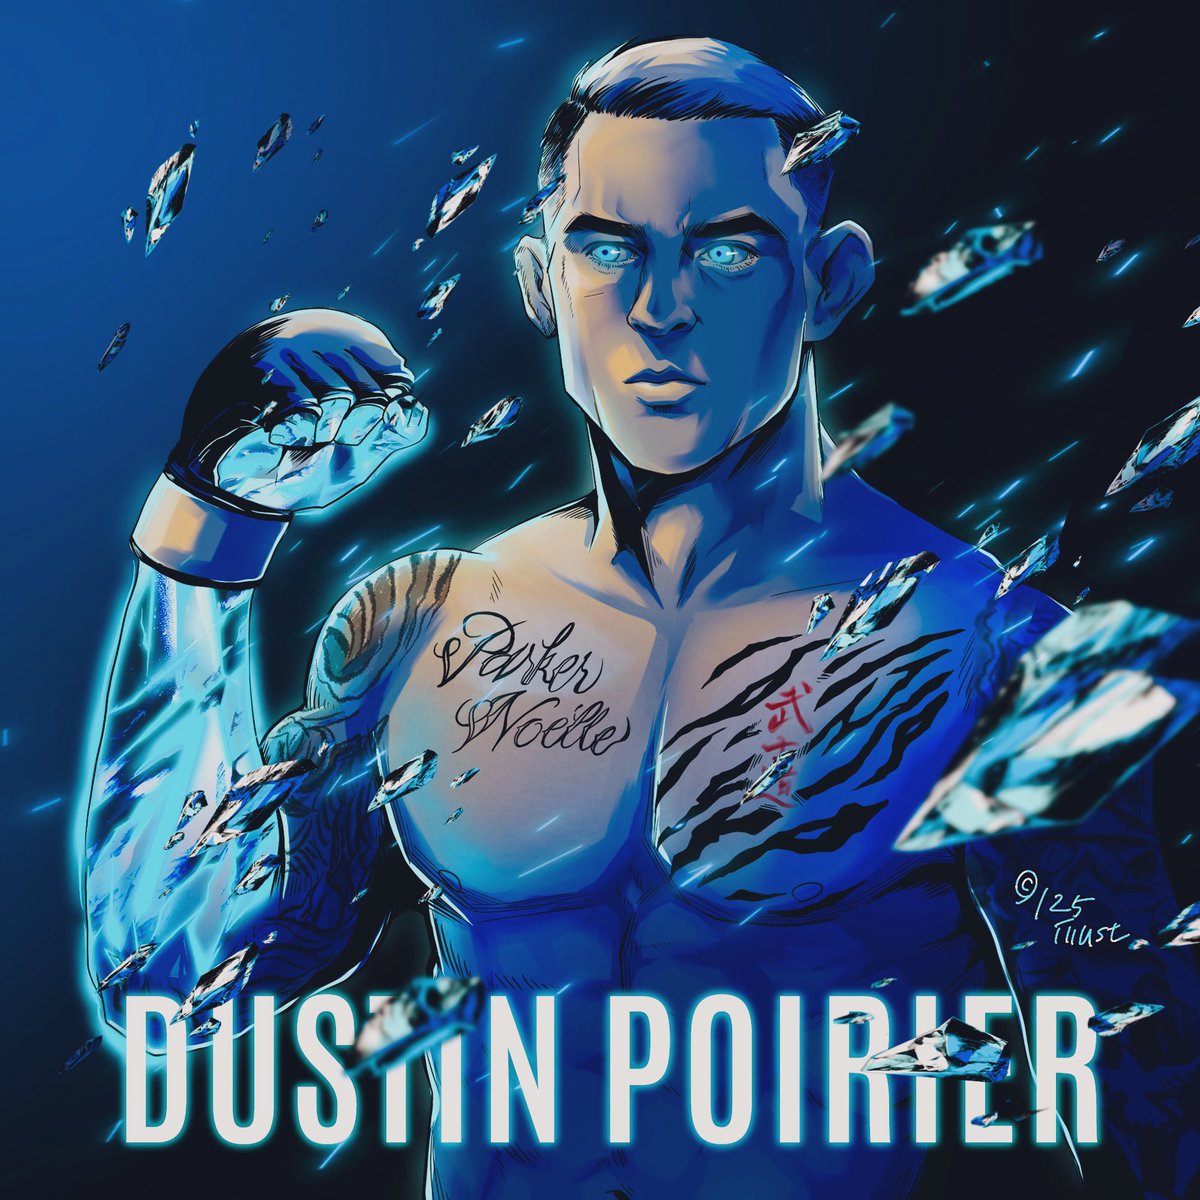 Dustin Poirier @DustinPoirier #dustinpoirier #ufc #UFC302